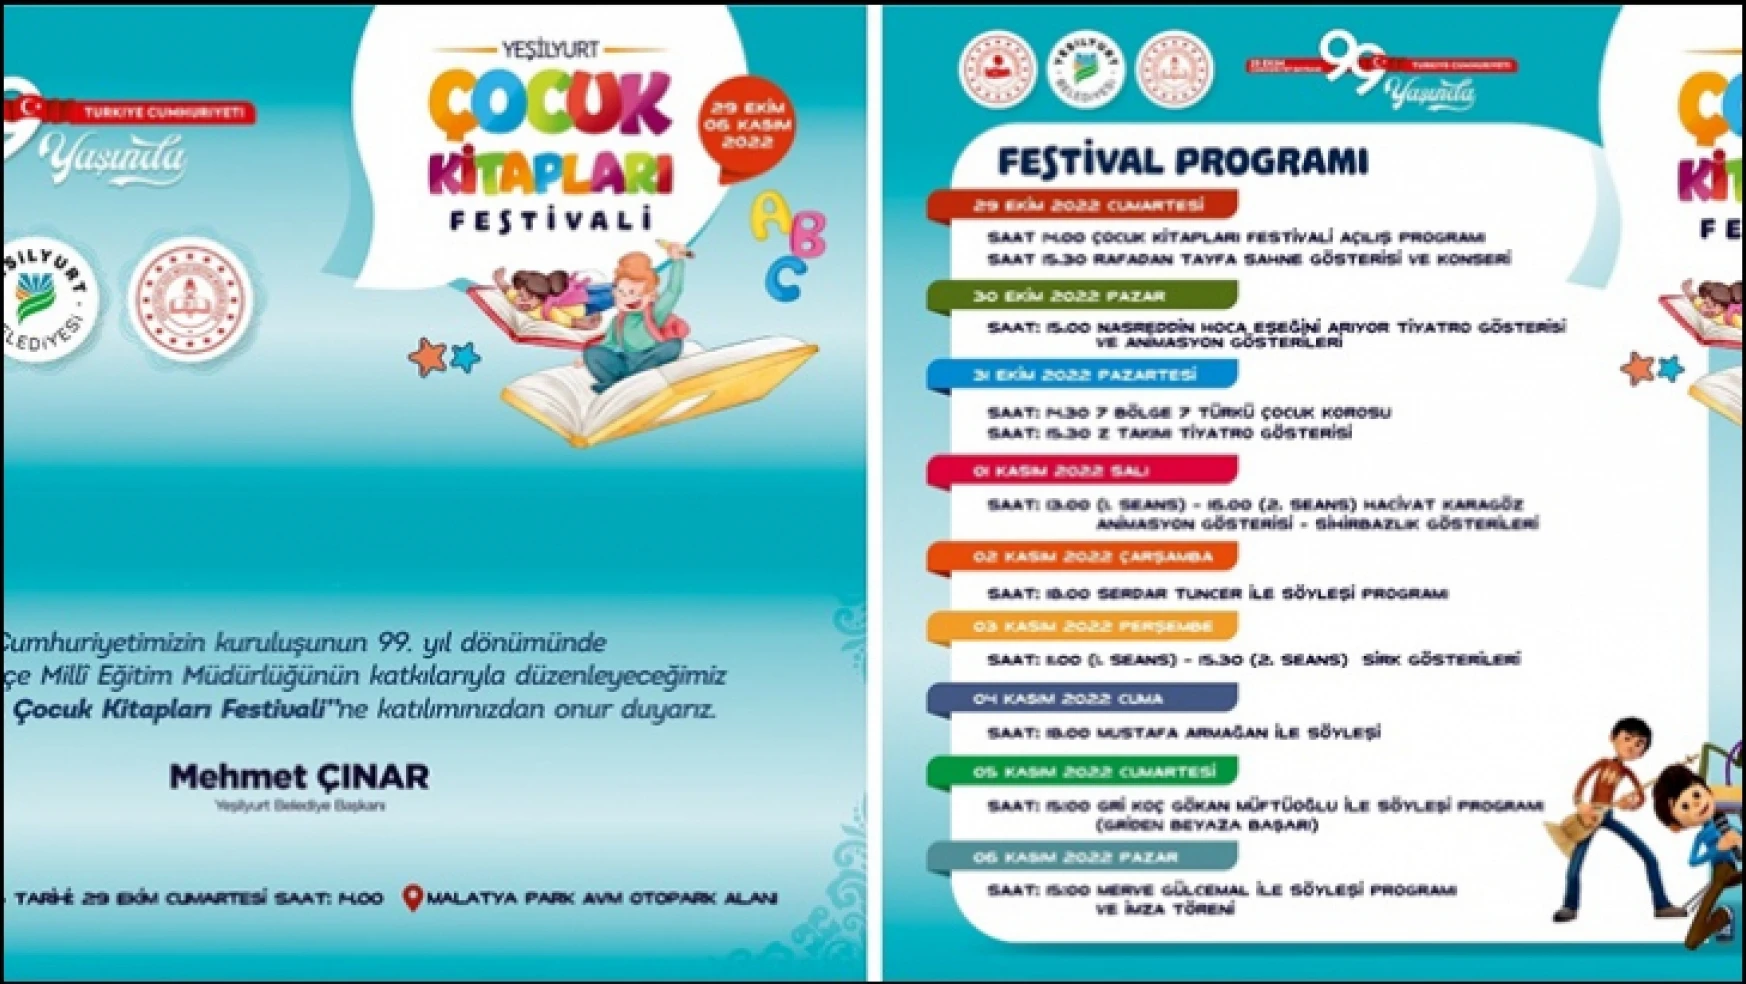 'Yeşilyurt Çocuk Kitapları' Festivali 29 Ekim'de Başlıyor